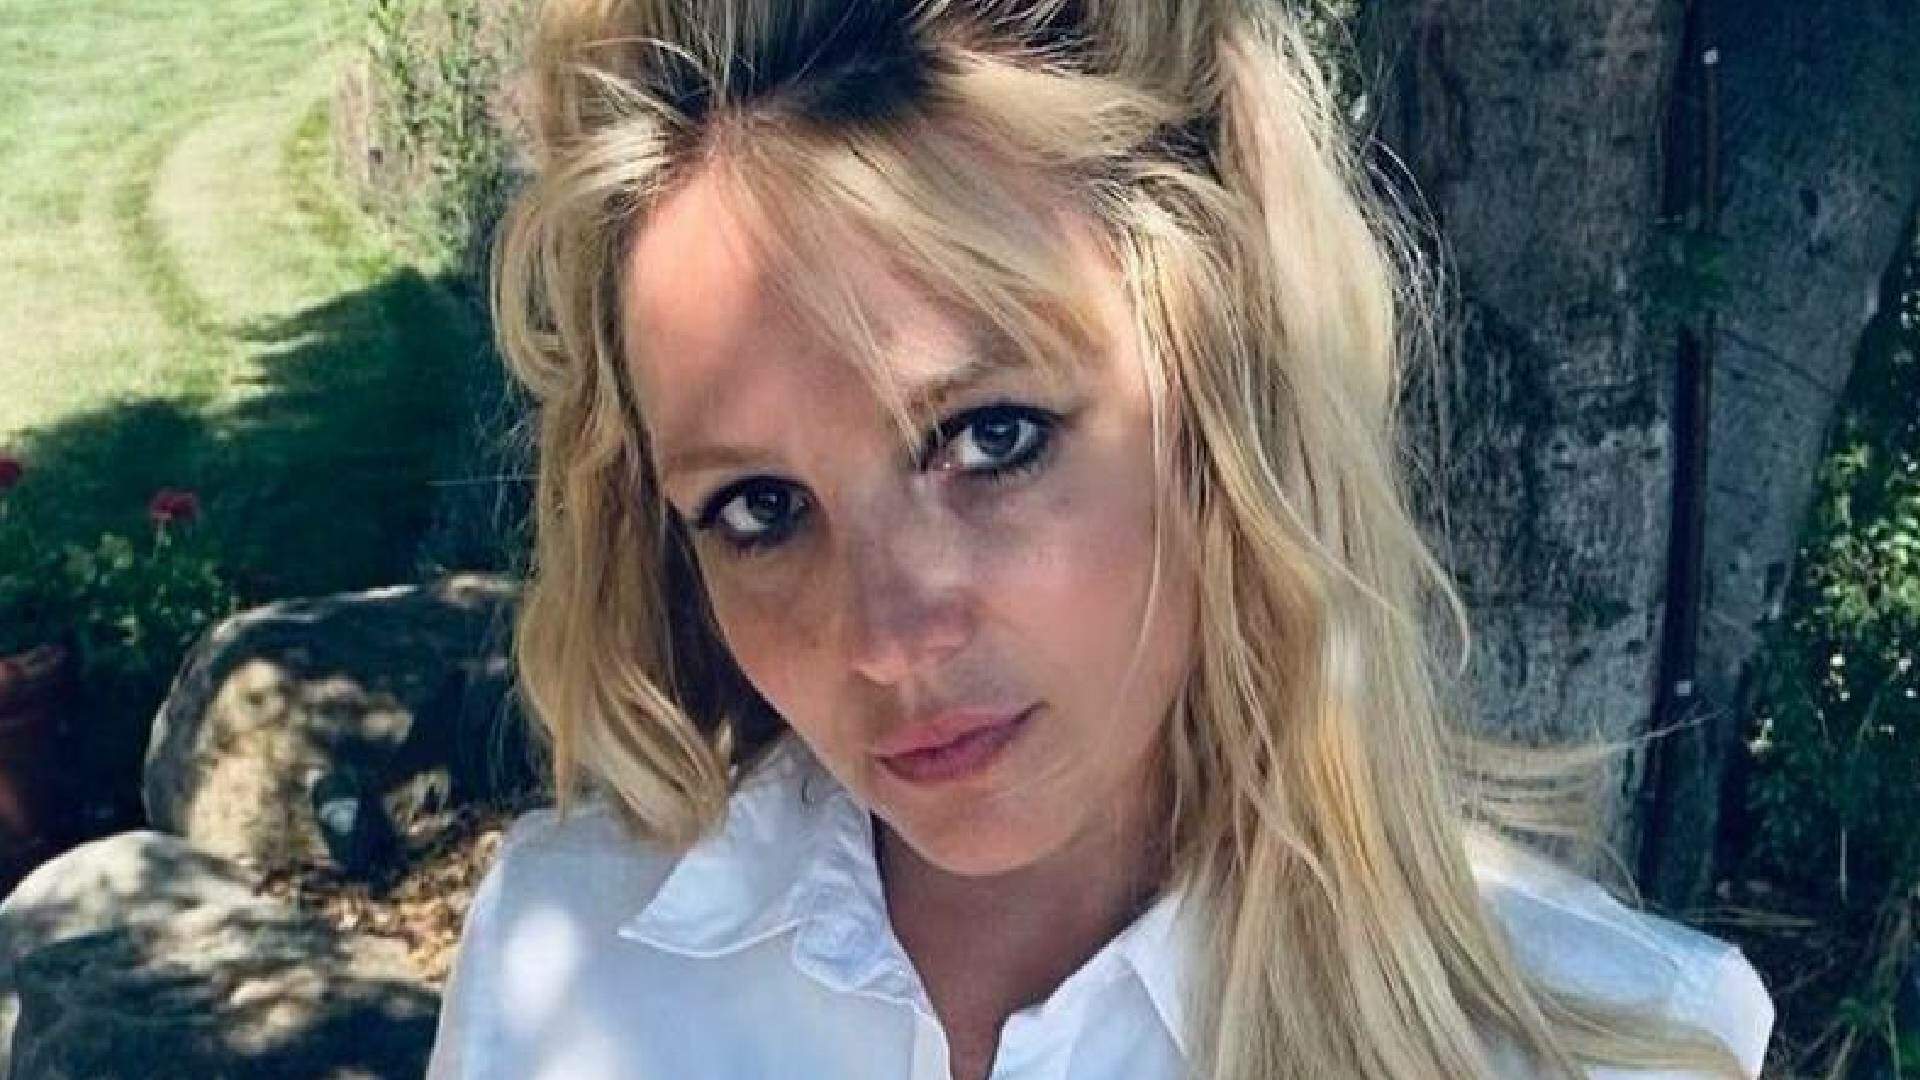 O que está acontecendo com Britney Spears? Estado de saúde da artista preocupa família e amigos - Metropolitana FM